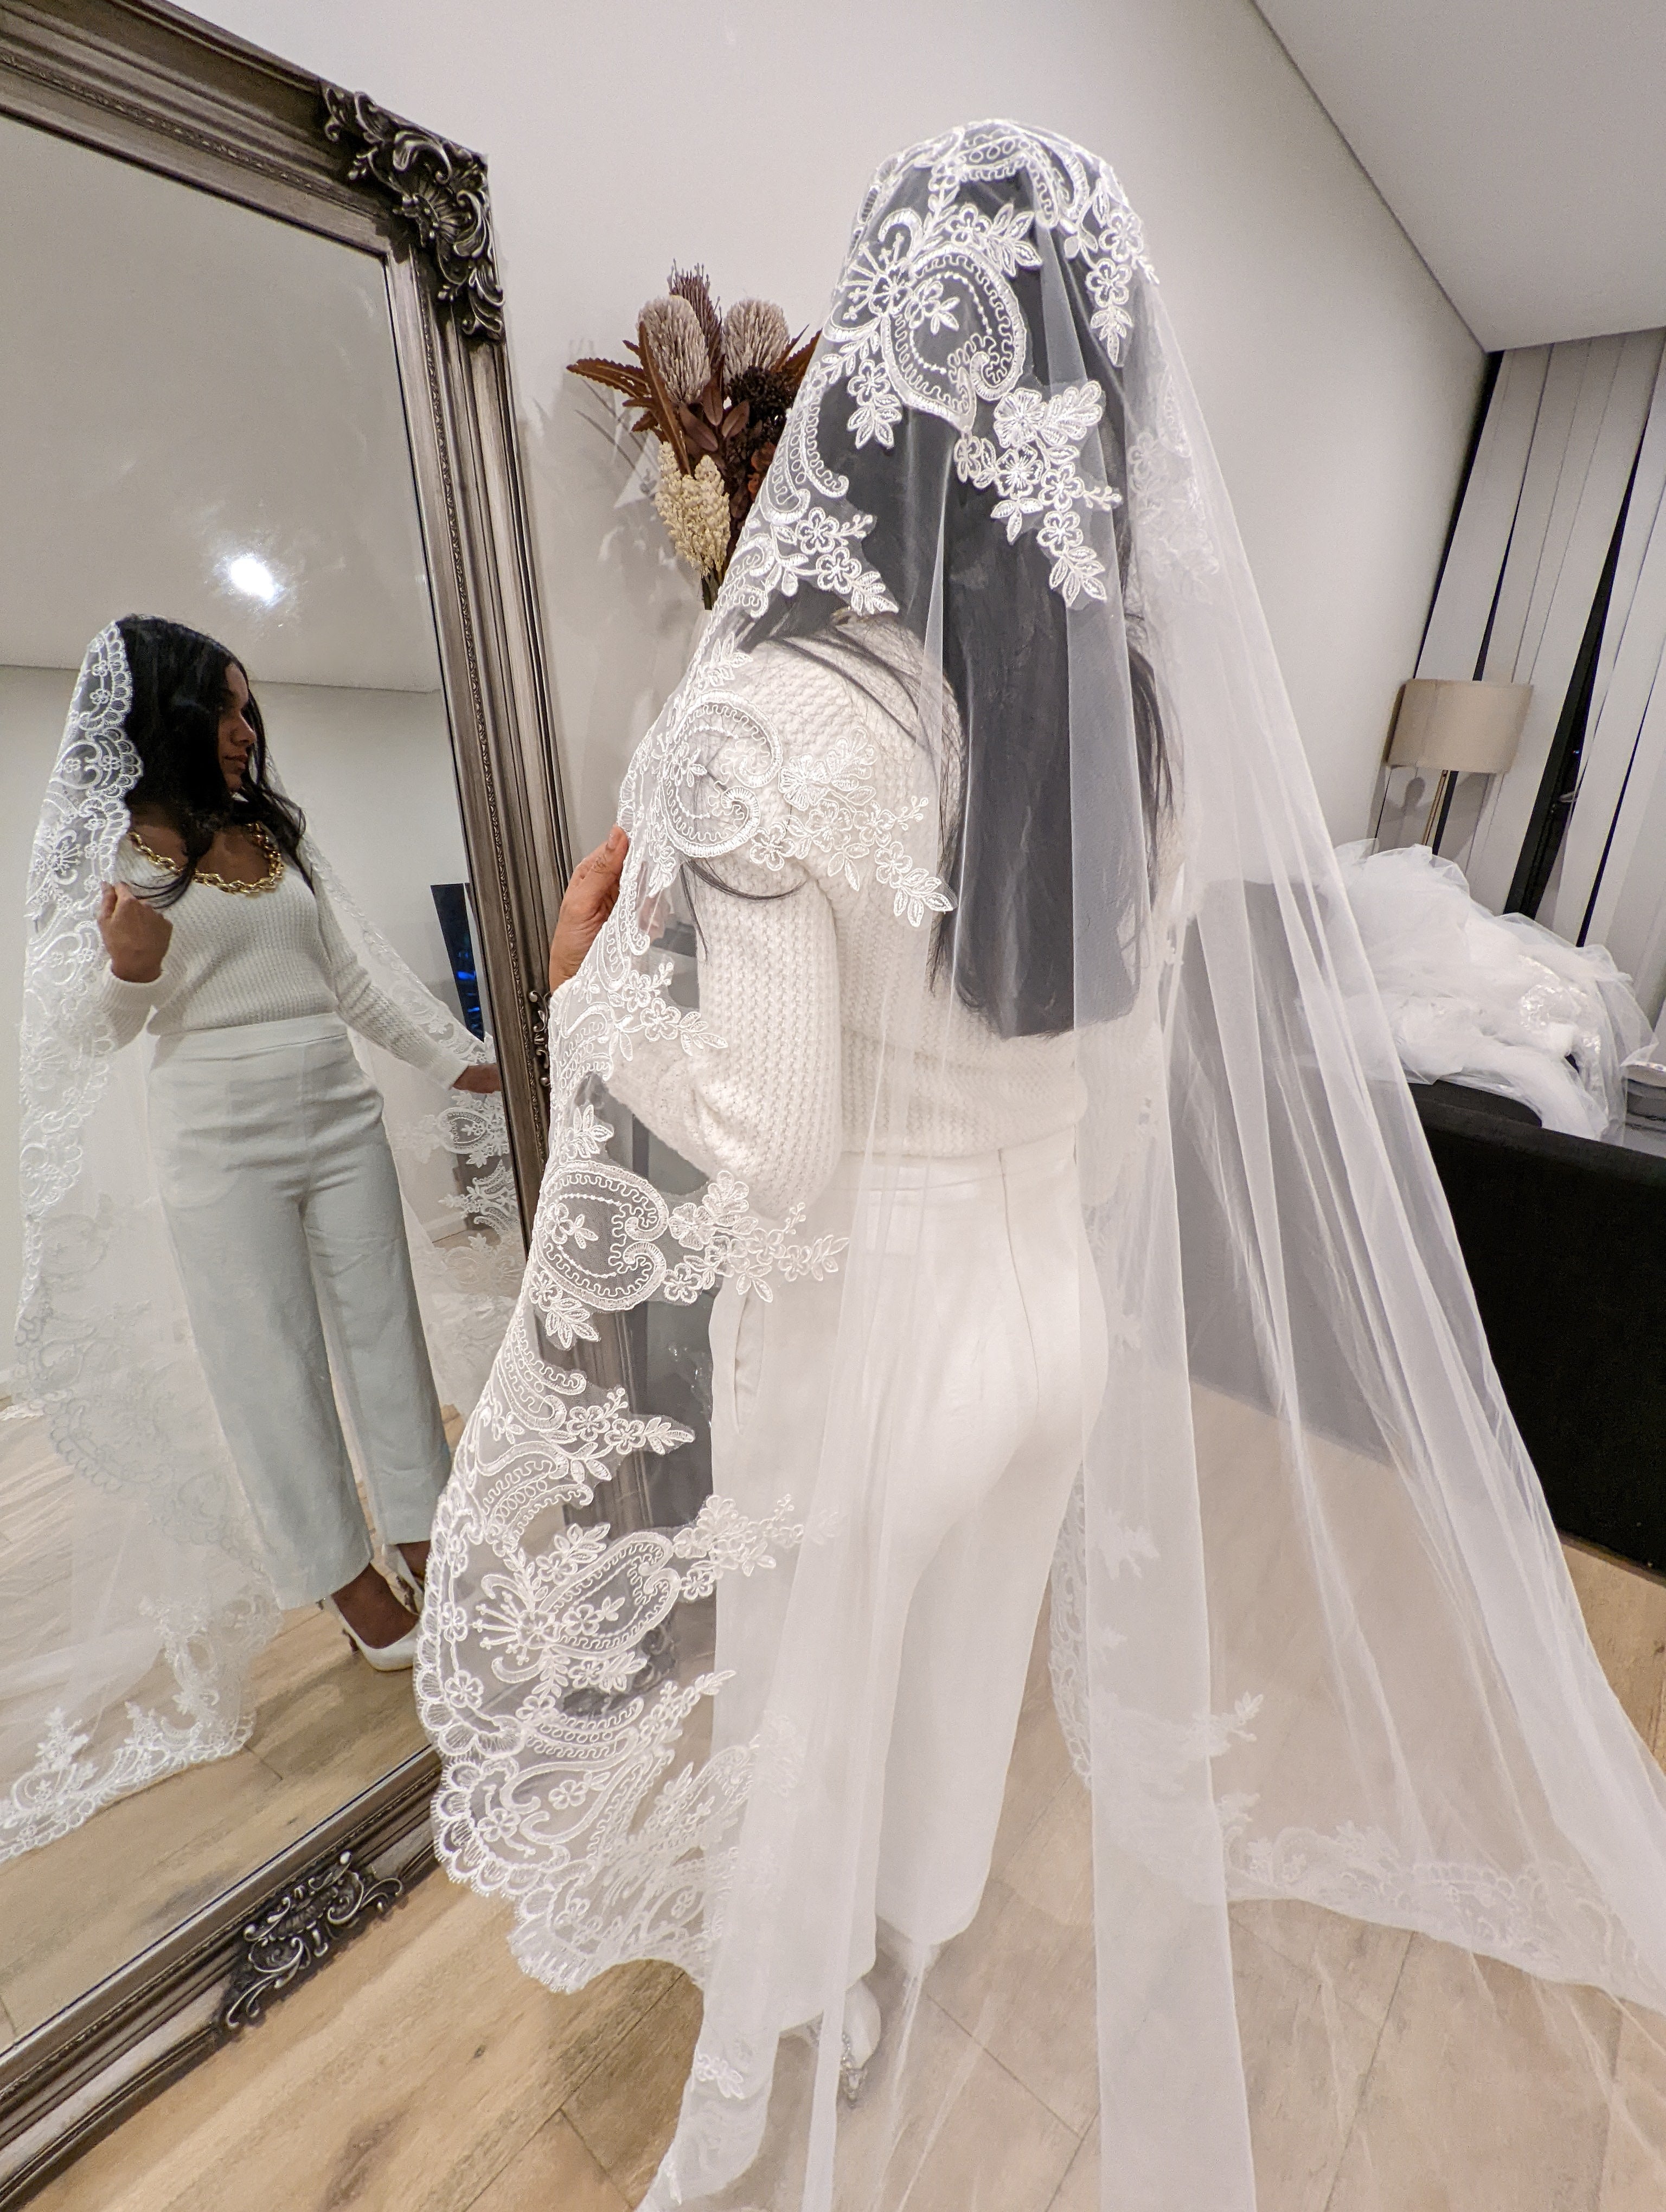 Custom Lace Veils  The Wedding Veil Shop